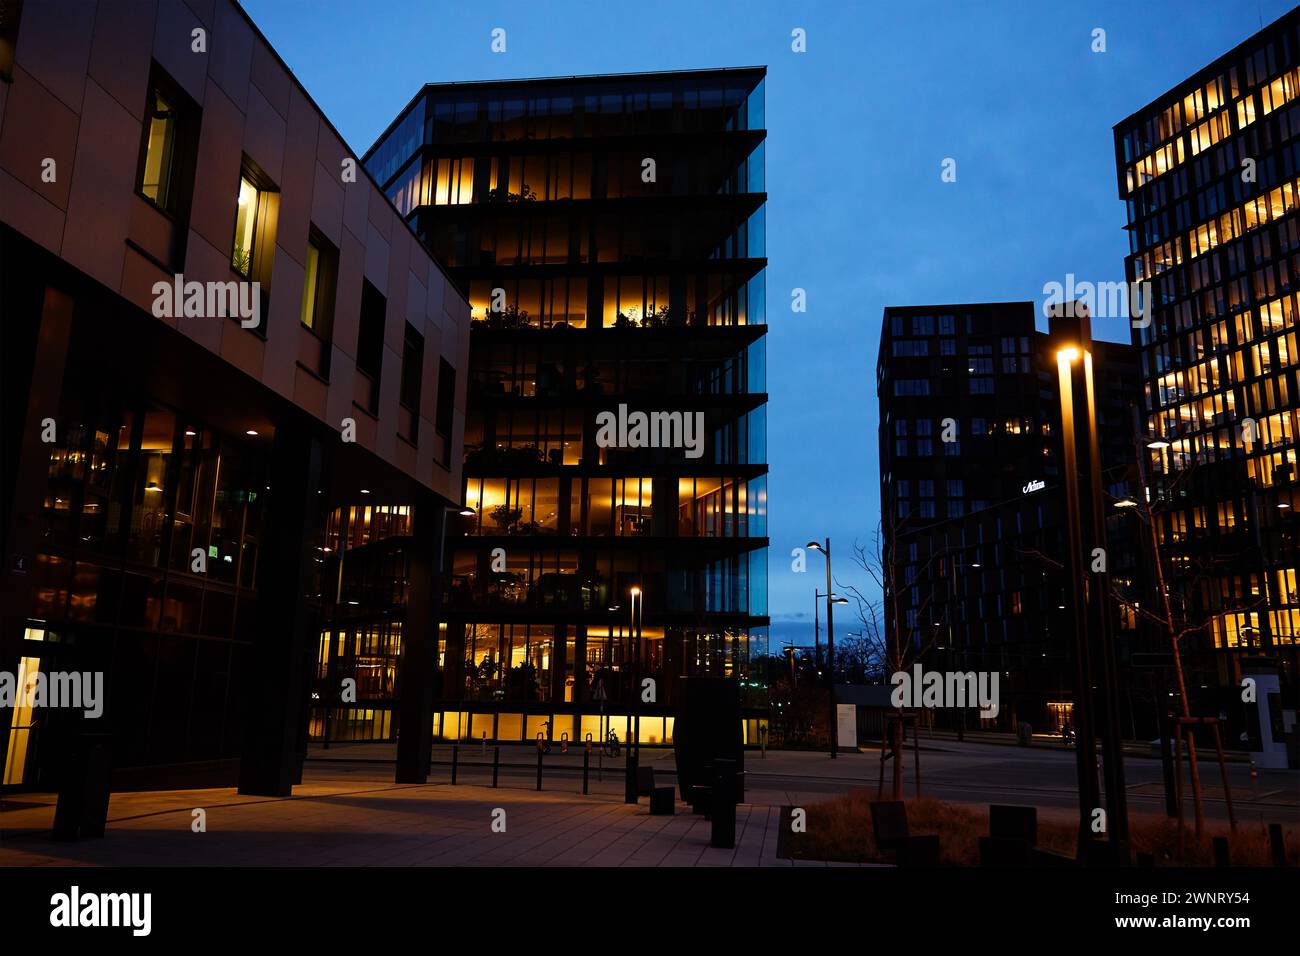 Das Bürogebäude beleuchtet den Abend mit Fenstern, die in der Abenddämmerung leuchten und das städtische Arbeitsleben nach Geschäftsschluss veranschaulichen Stockfoto